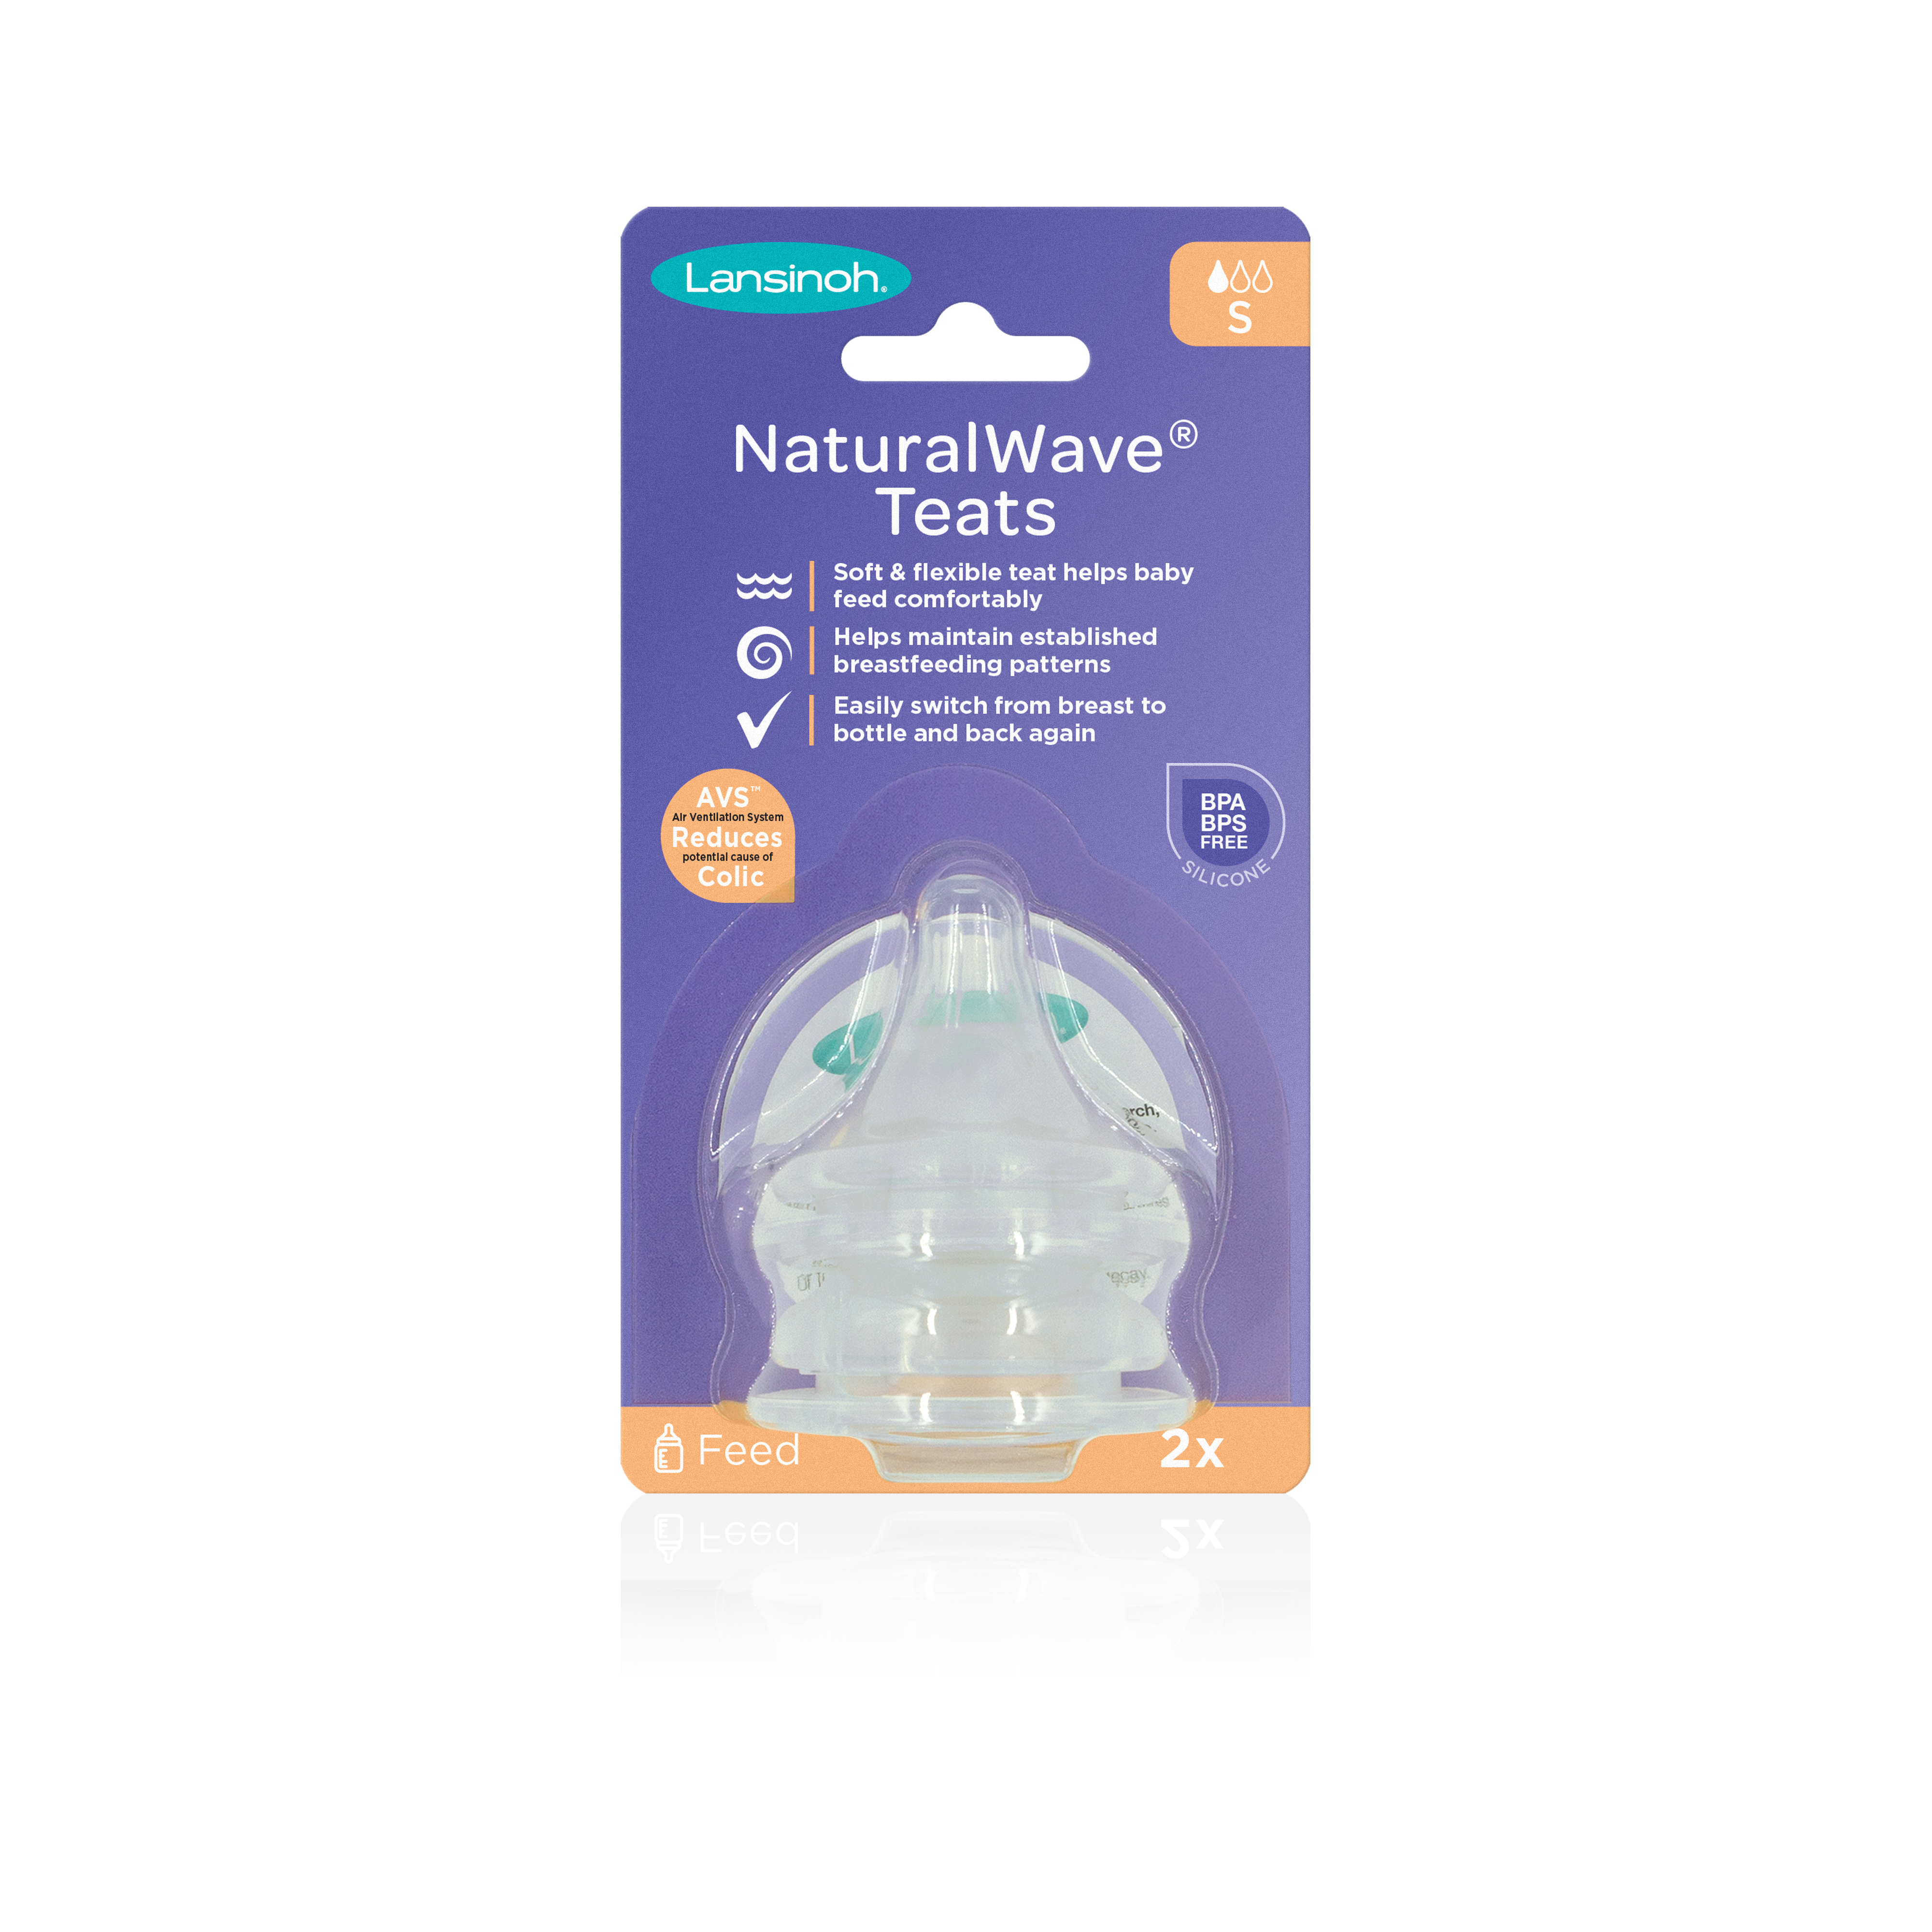 Lansinoh NaturalWave cumeľ pomalý prietok pre dojčené deti uľahčuje prechod na kŕmenie z fľaše